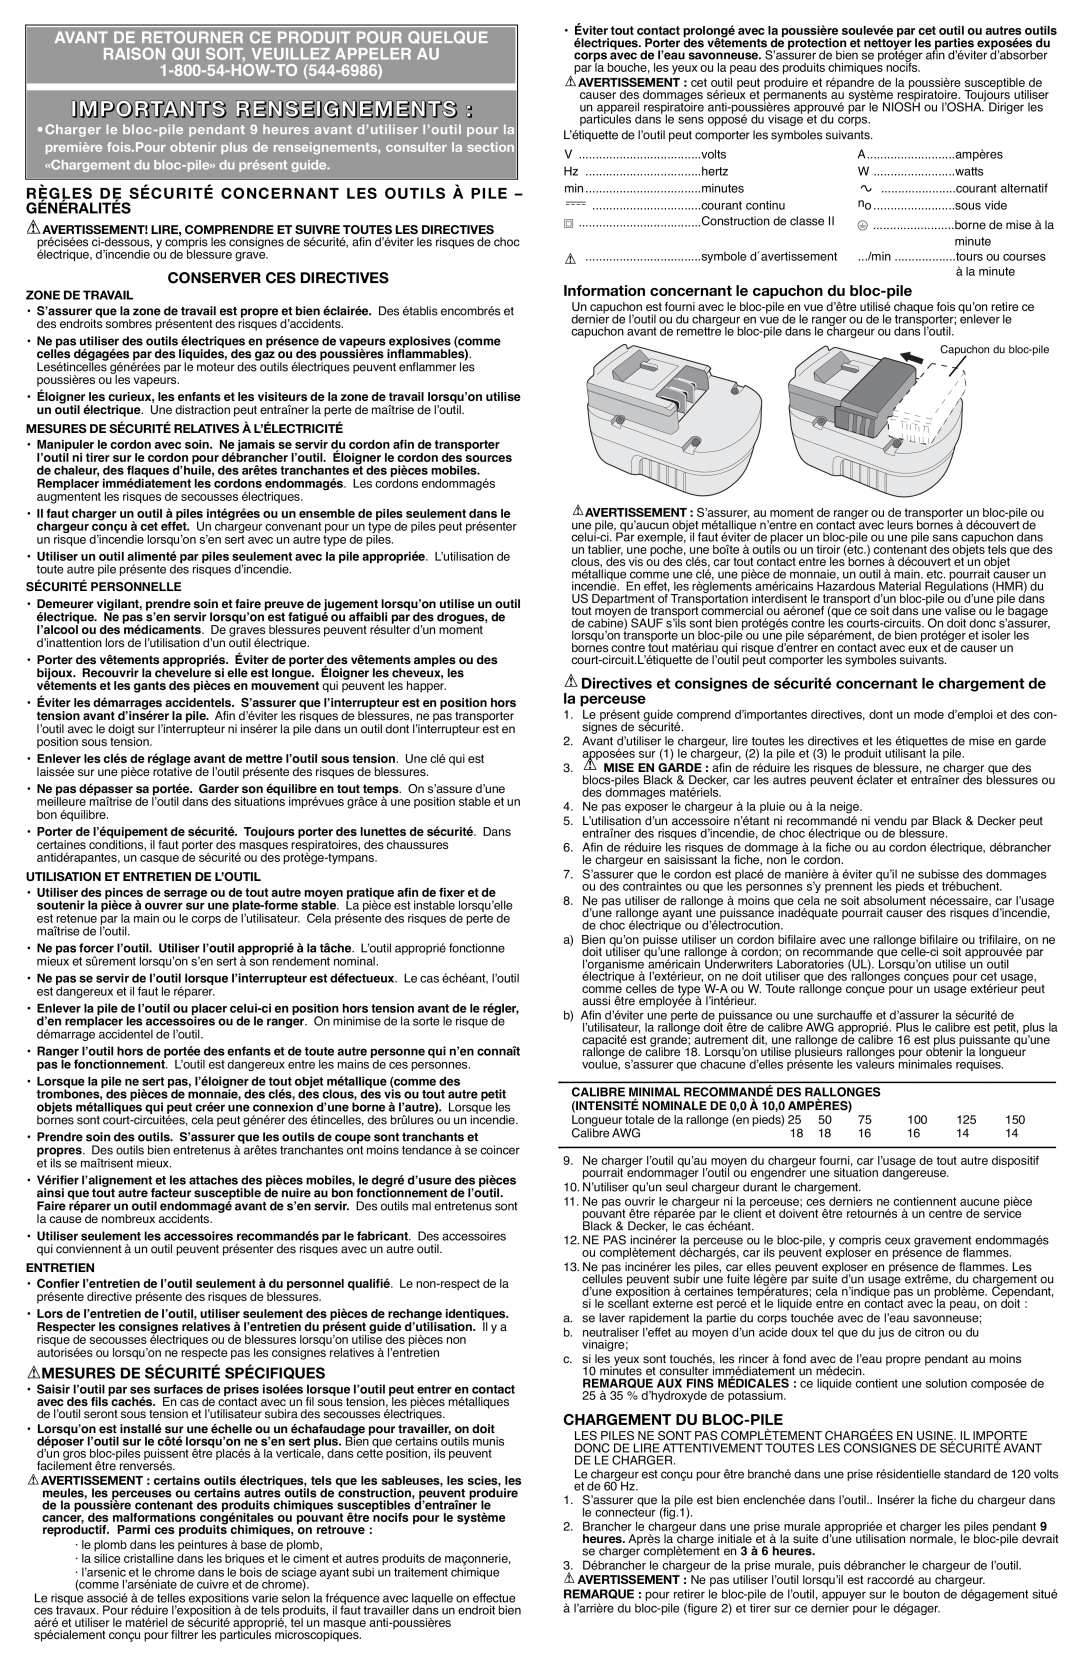 Black & Decker PS2400 Importants Renseignements, Avant De Retourner Ce Produit Pour Quelque, Conserver Ces Directives 